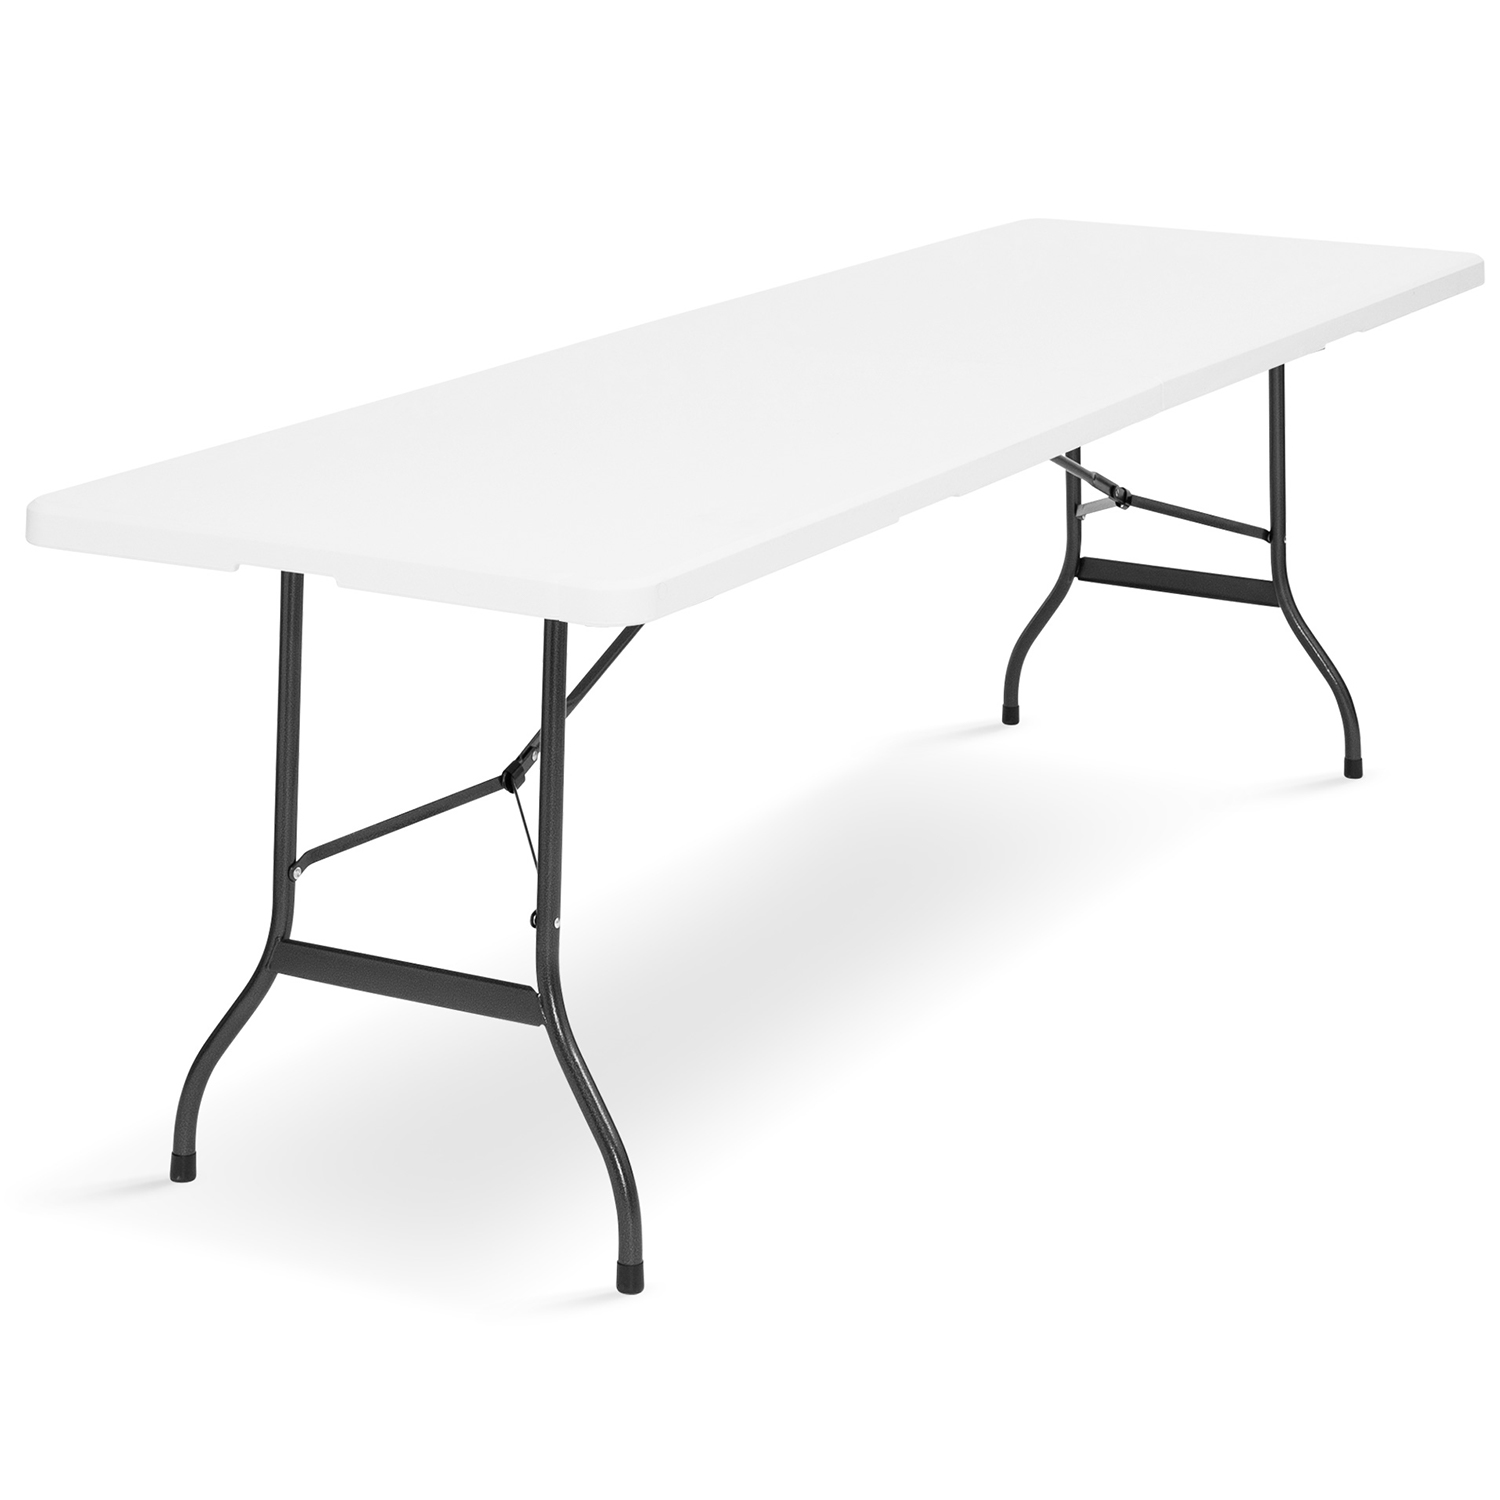 Table de jardin ID Market Table pliante portable 180 cm et 2 bancs pliables  pour camping buffet